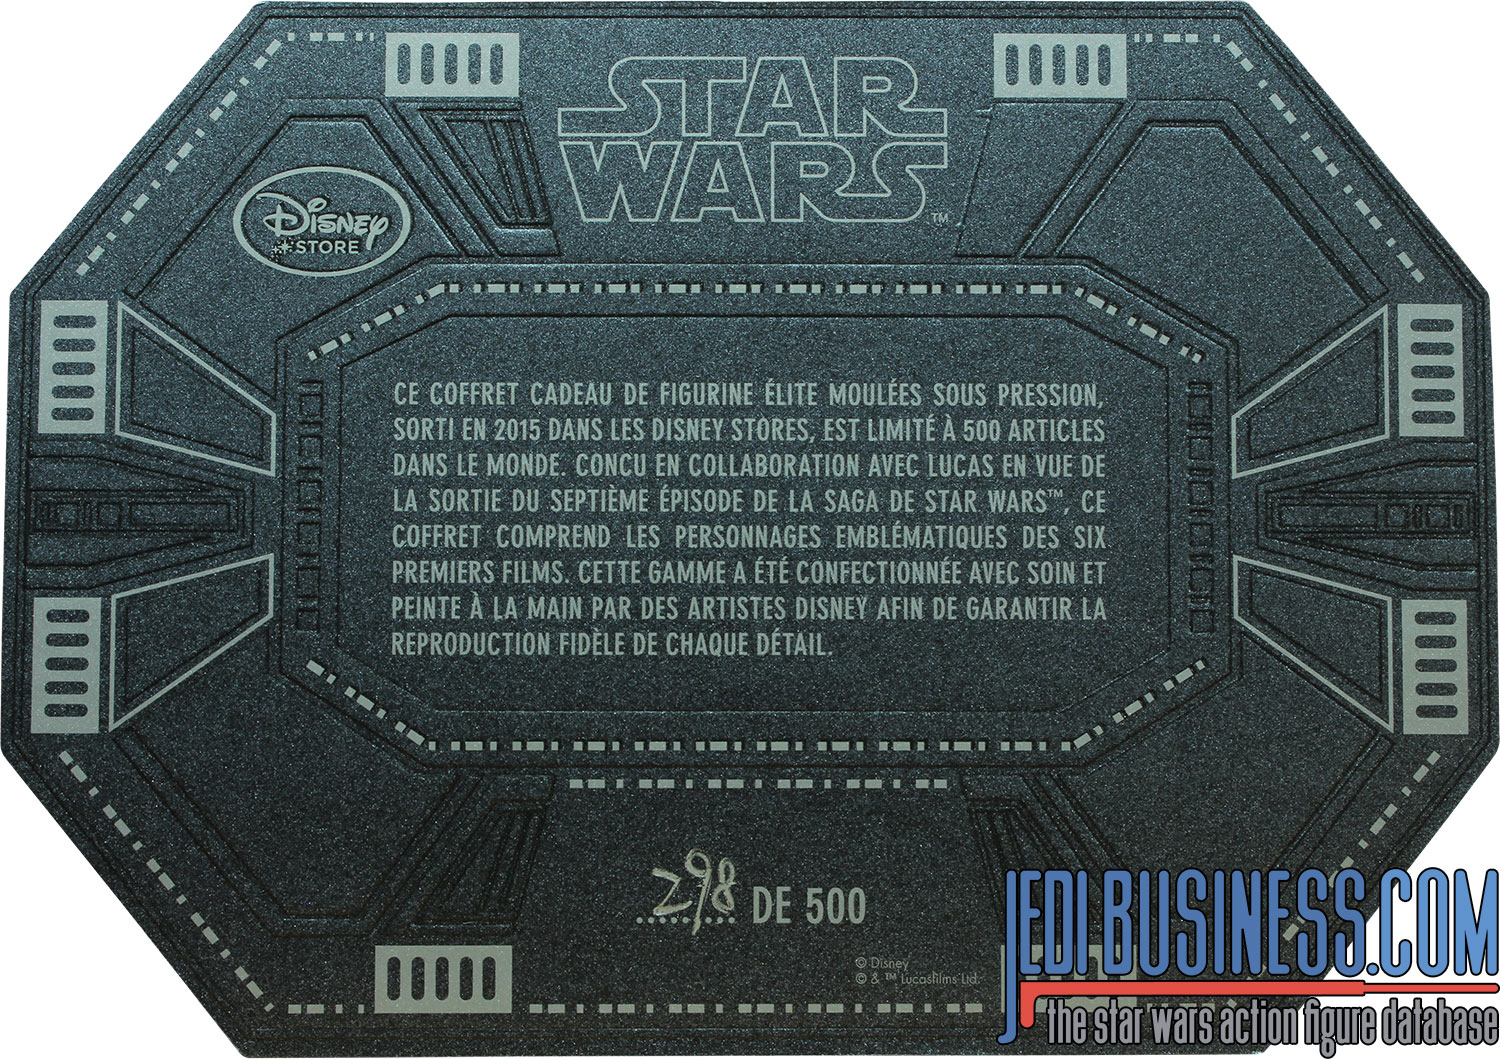 R2-D2 D23 8-Pack 2015